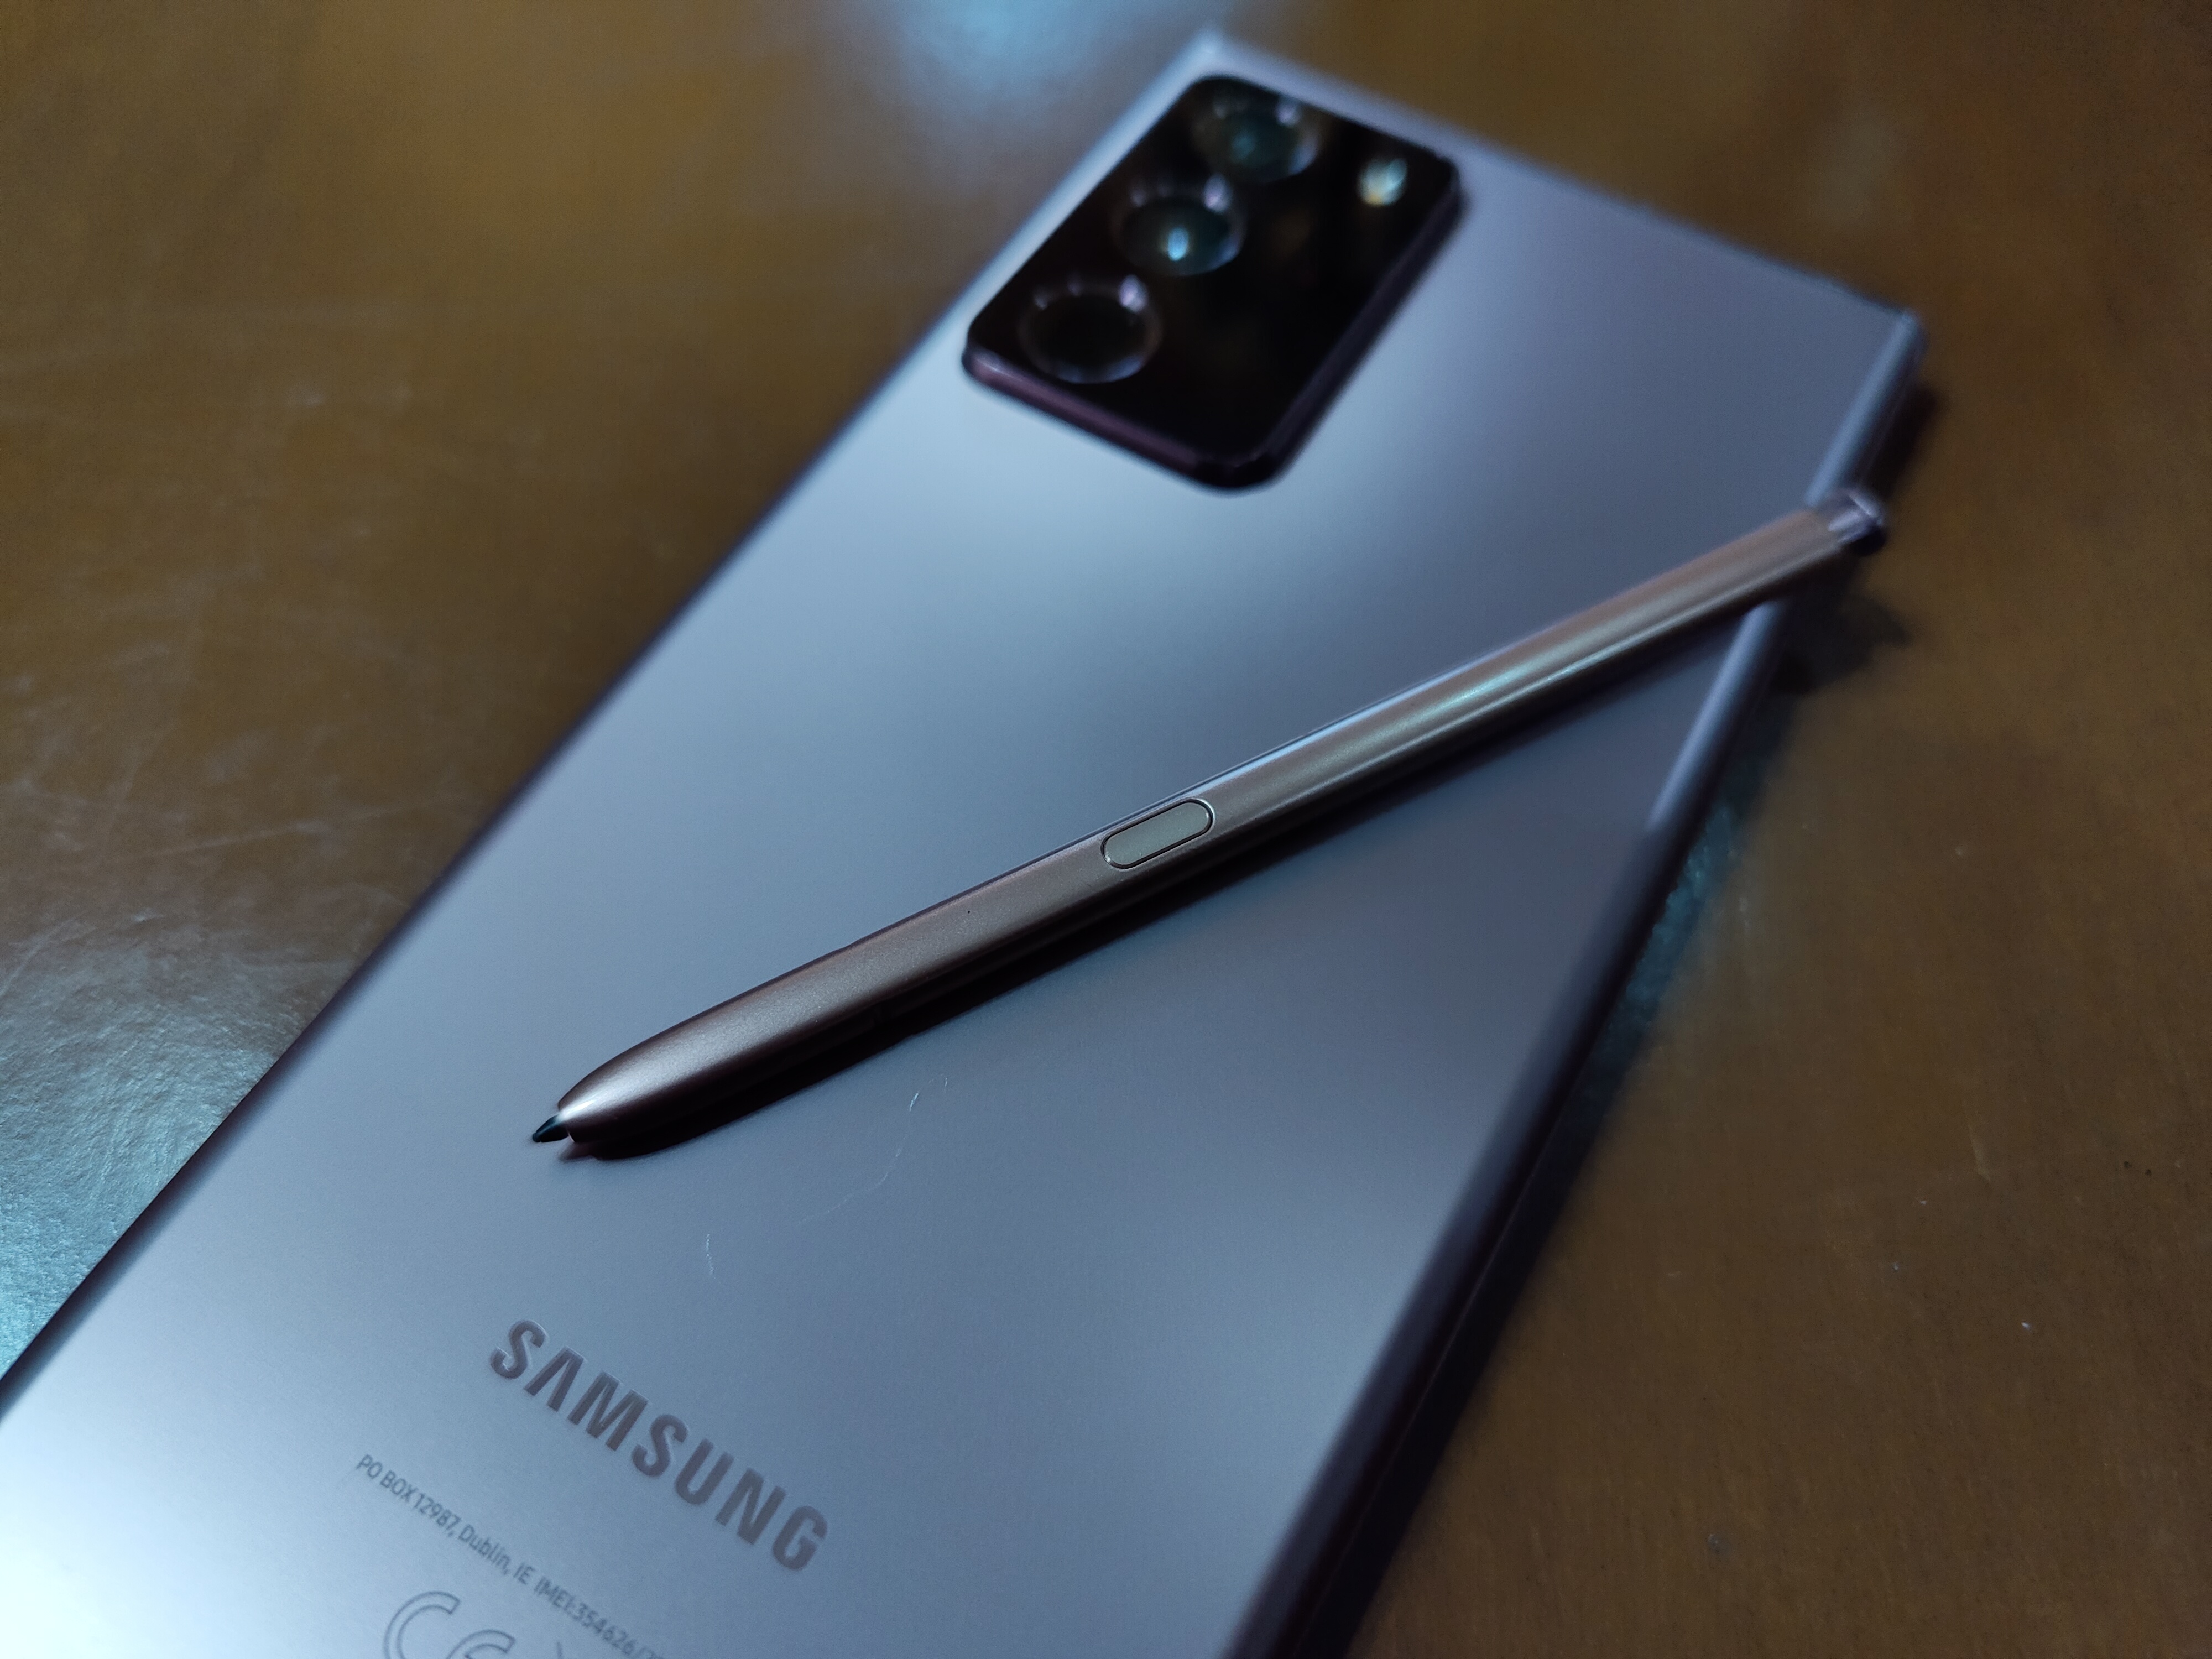 Samsung Kapalkan Lebih Banyak Smartphone di Q3 2021